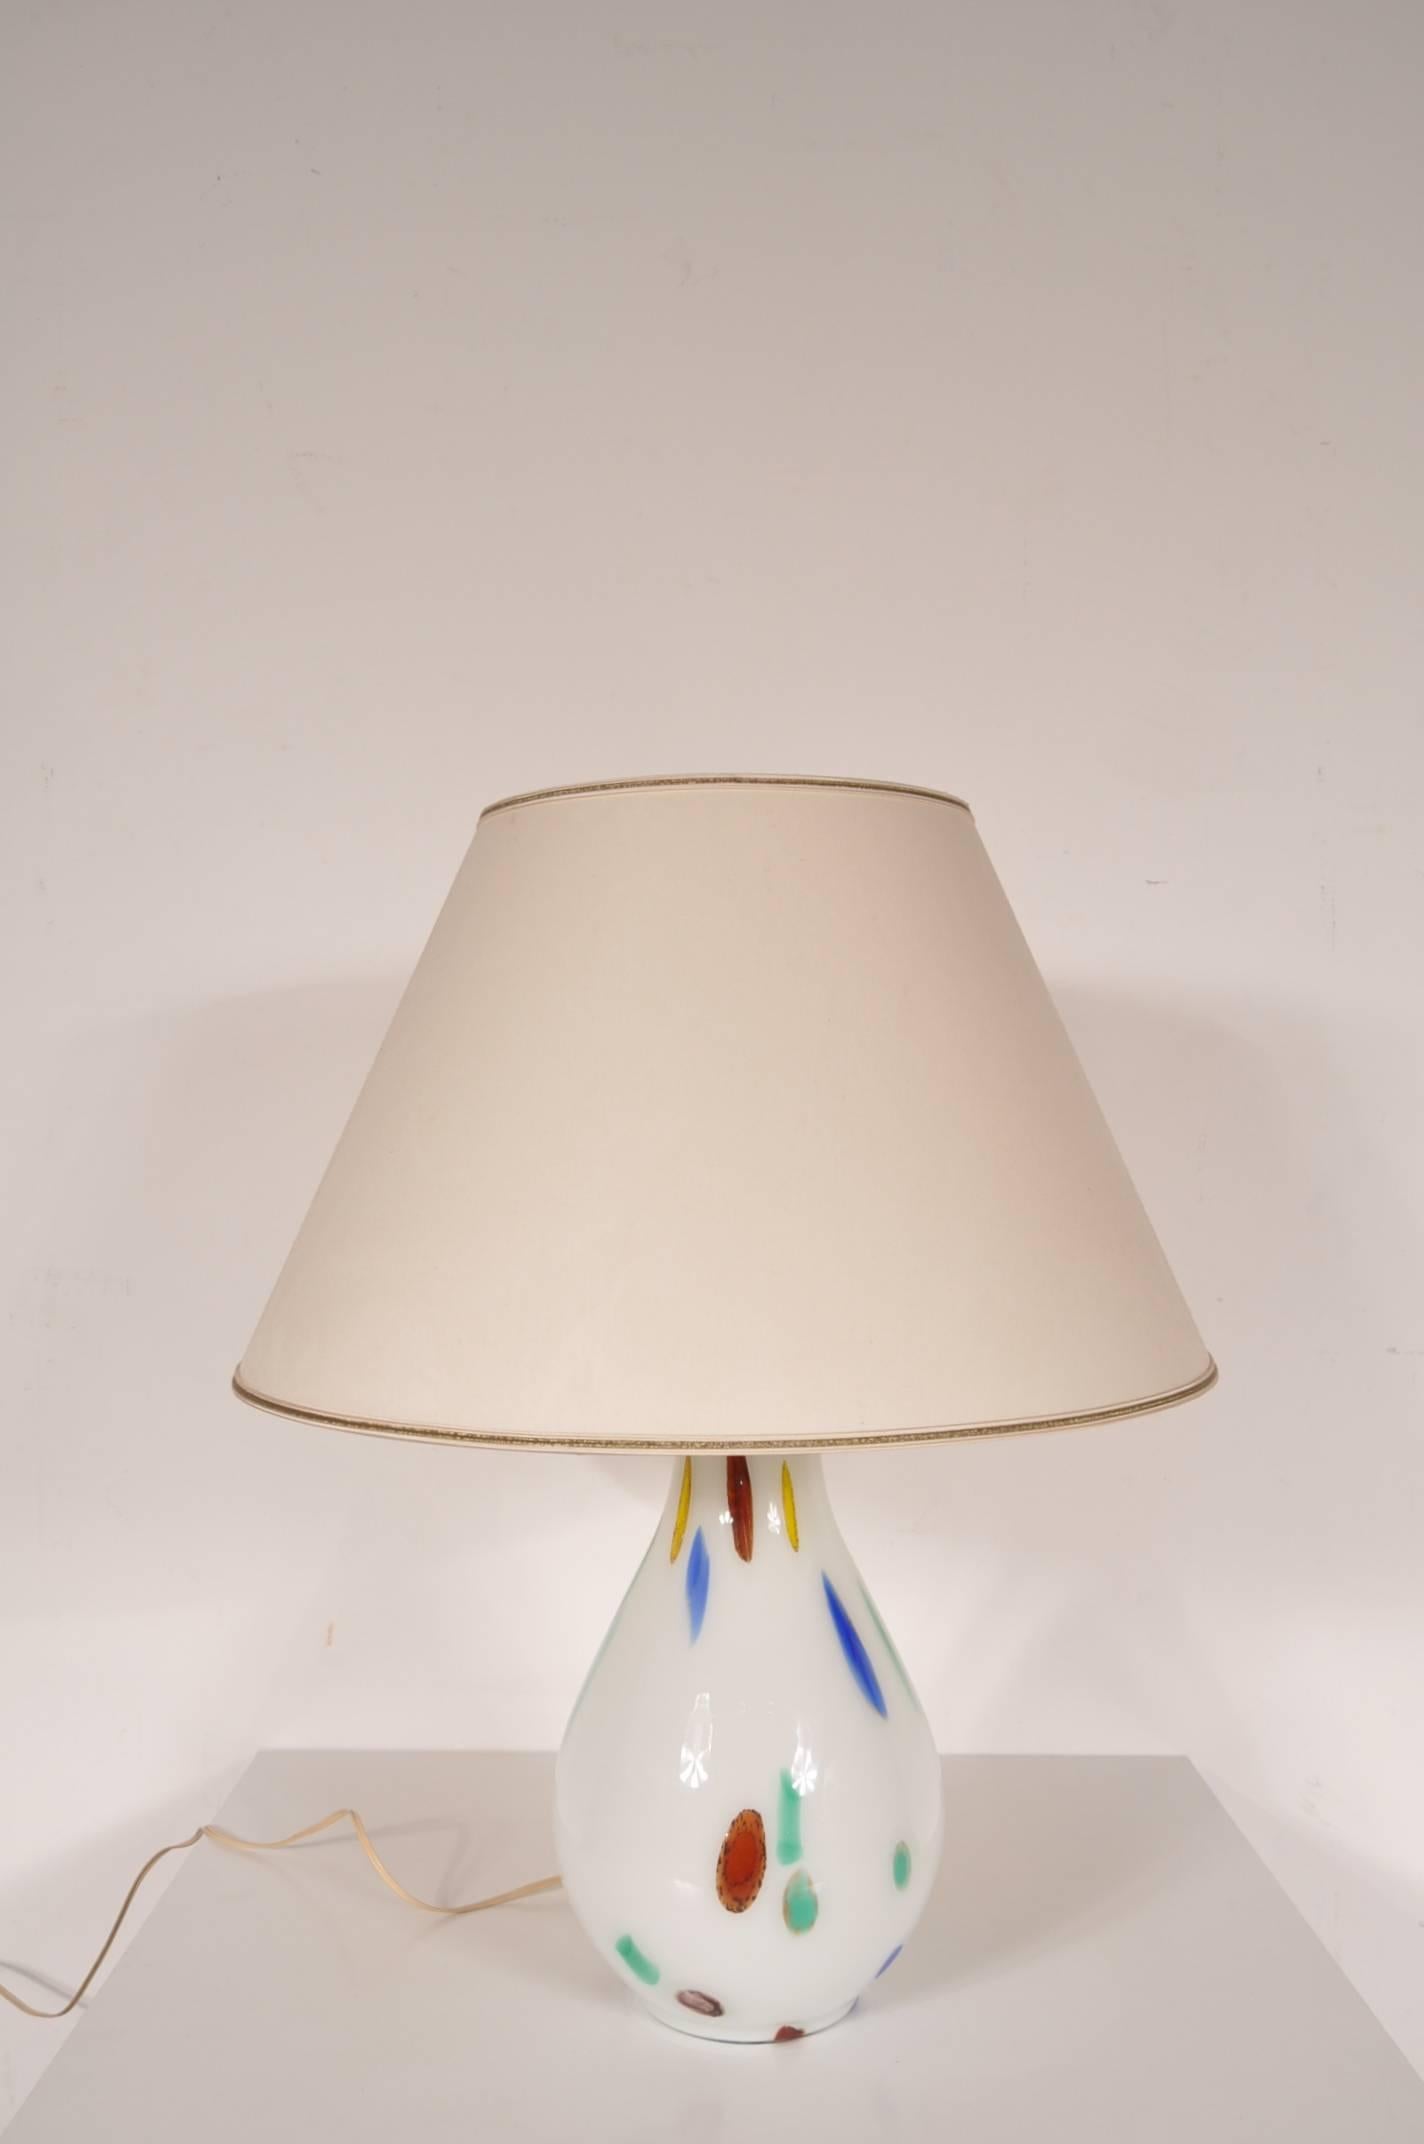 Merveilleuse lampe de table en verre de Murano conçue par Dino Martens, fabriquée par Aureliano Toso à Murano, Italie, vers 1960.

Cette lampe de table grand modèle est une trouvaille très rare. La base est en verre de Murano soufflé à la bouche,